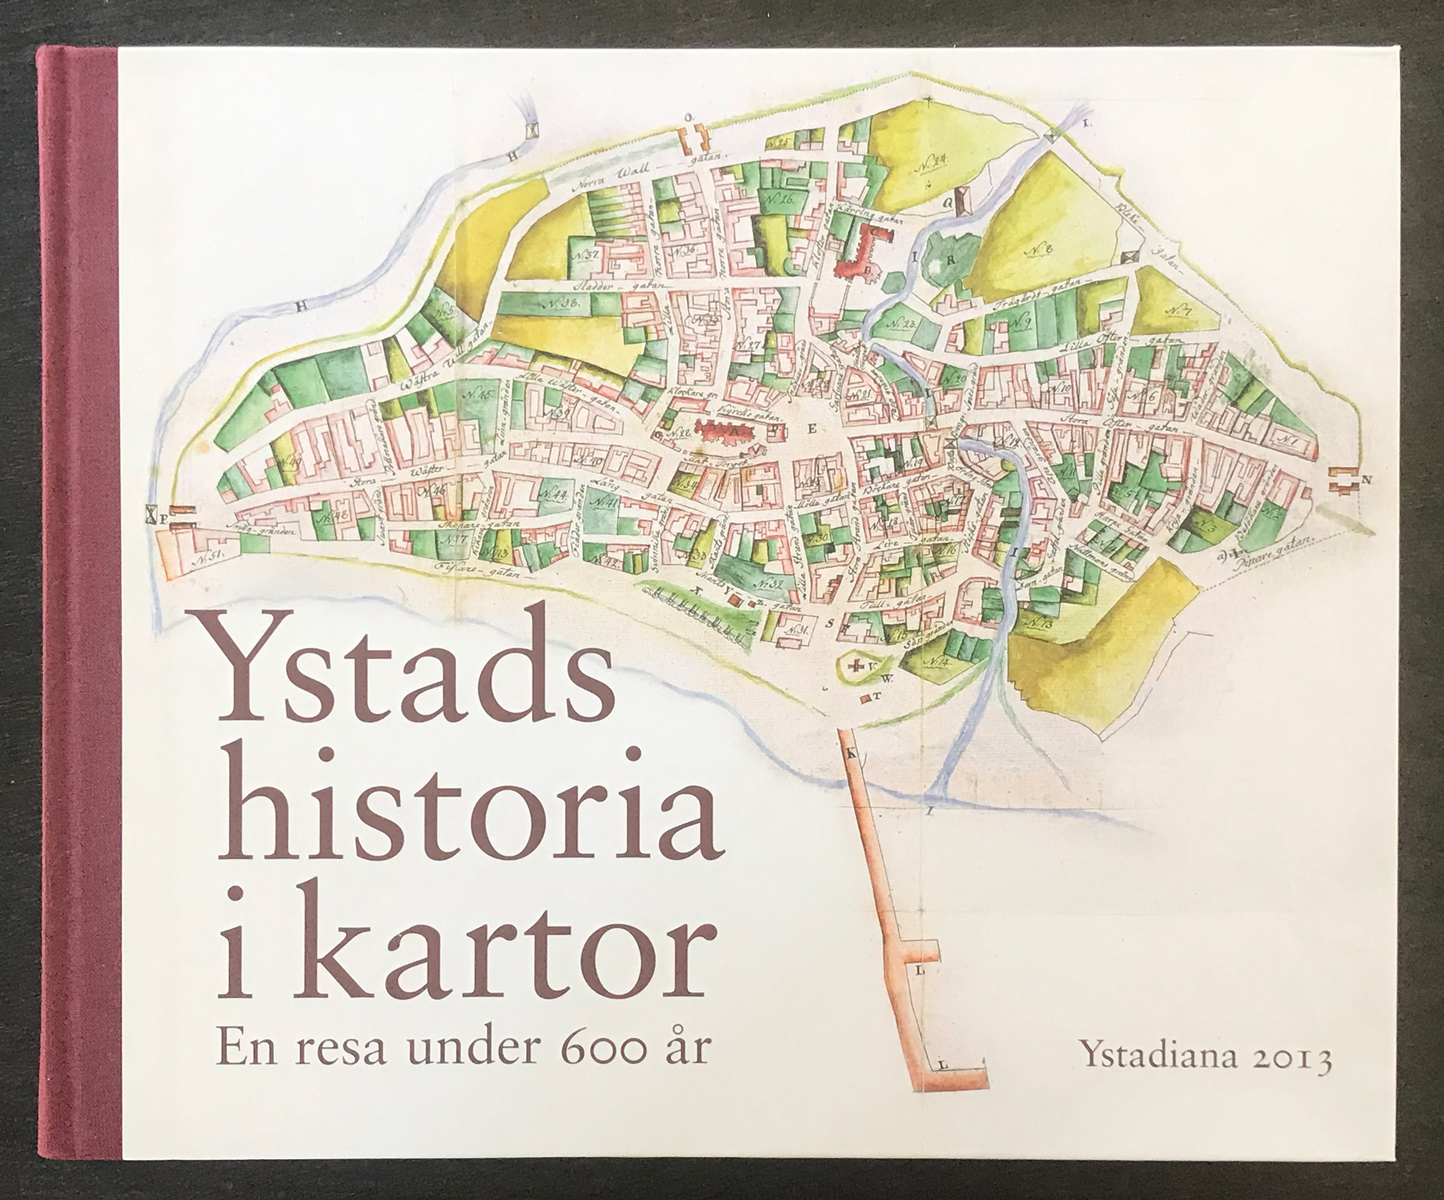 Ystads historia i kartor – en resa under 600 år, red. Per-Axel Sjöholm och Ronny Nielsen, 2013